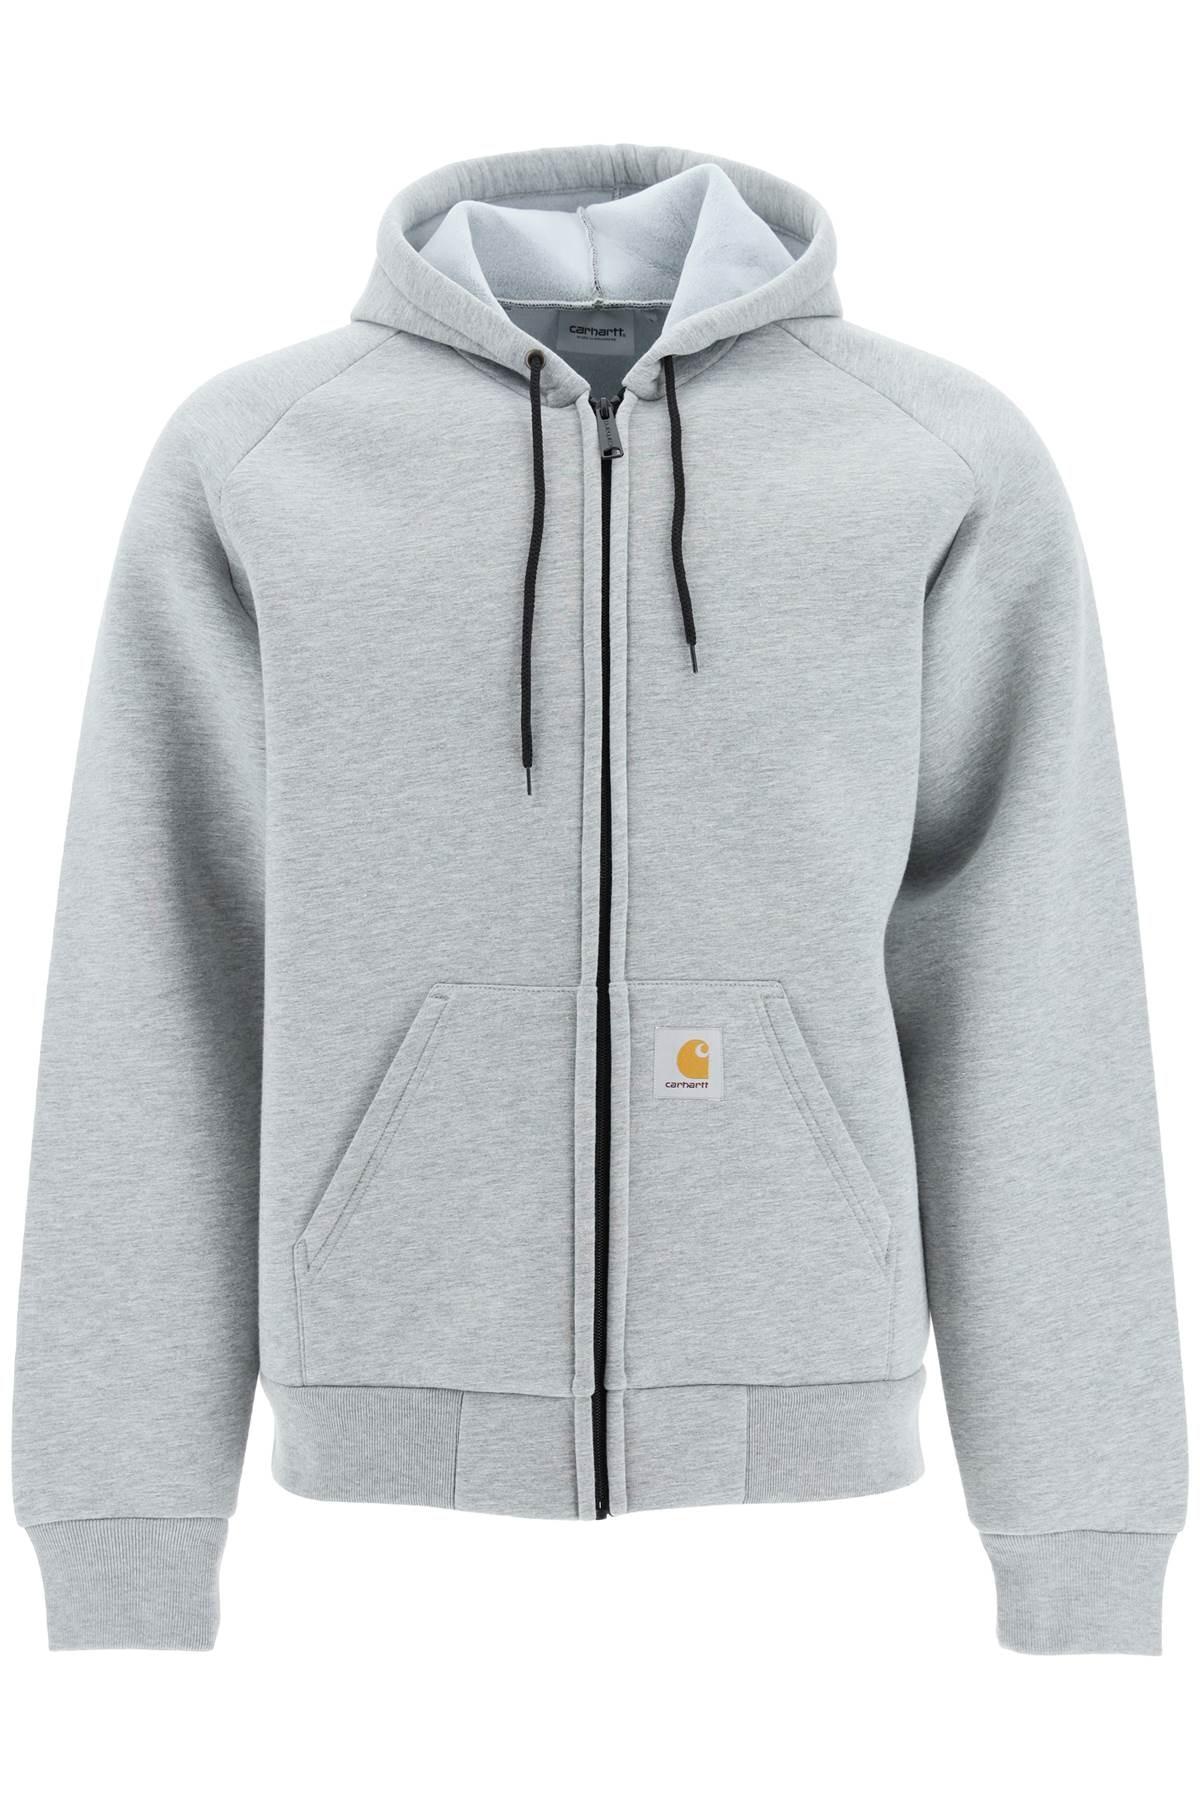 Carhartt WIP Car-lux Full Zip Hoodie-jacket in Grey for Men | Lyst Canada